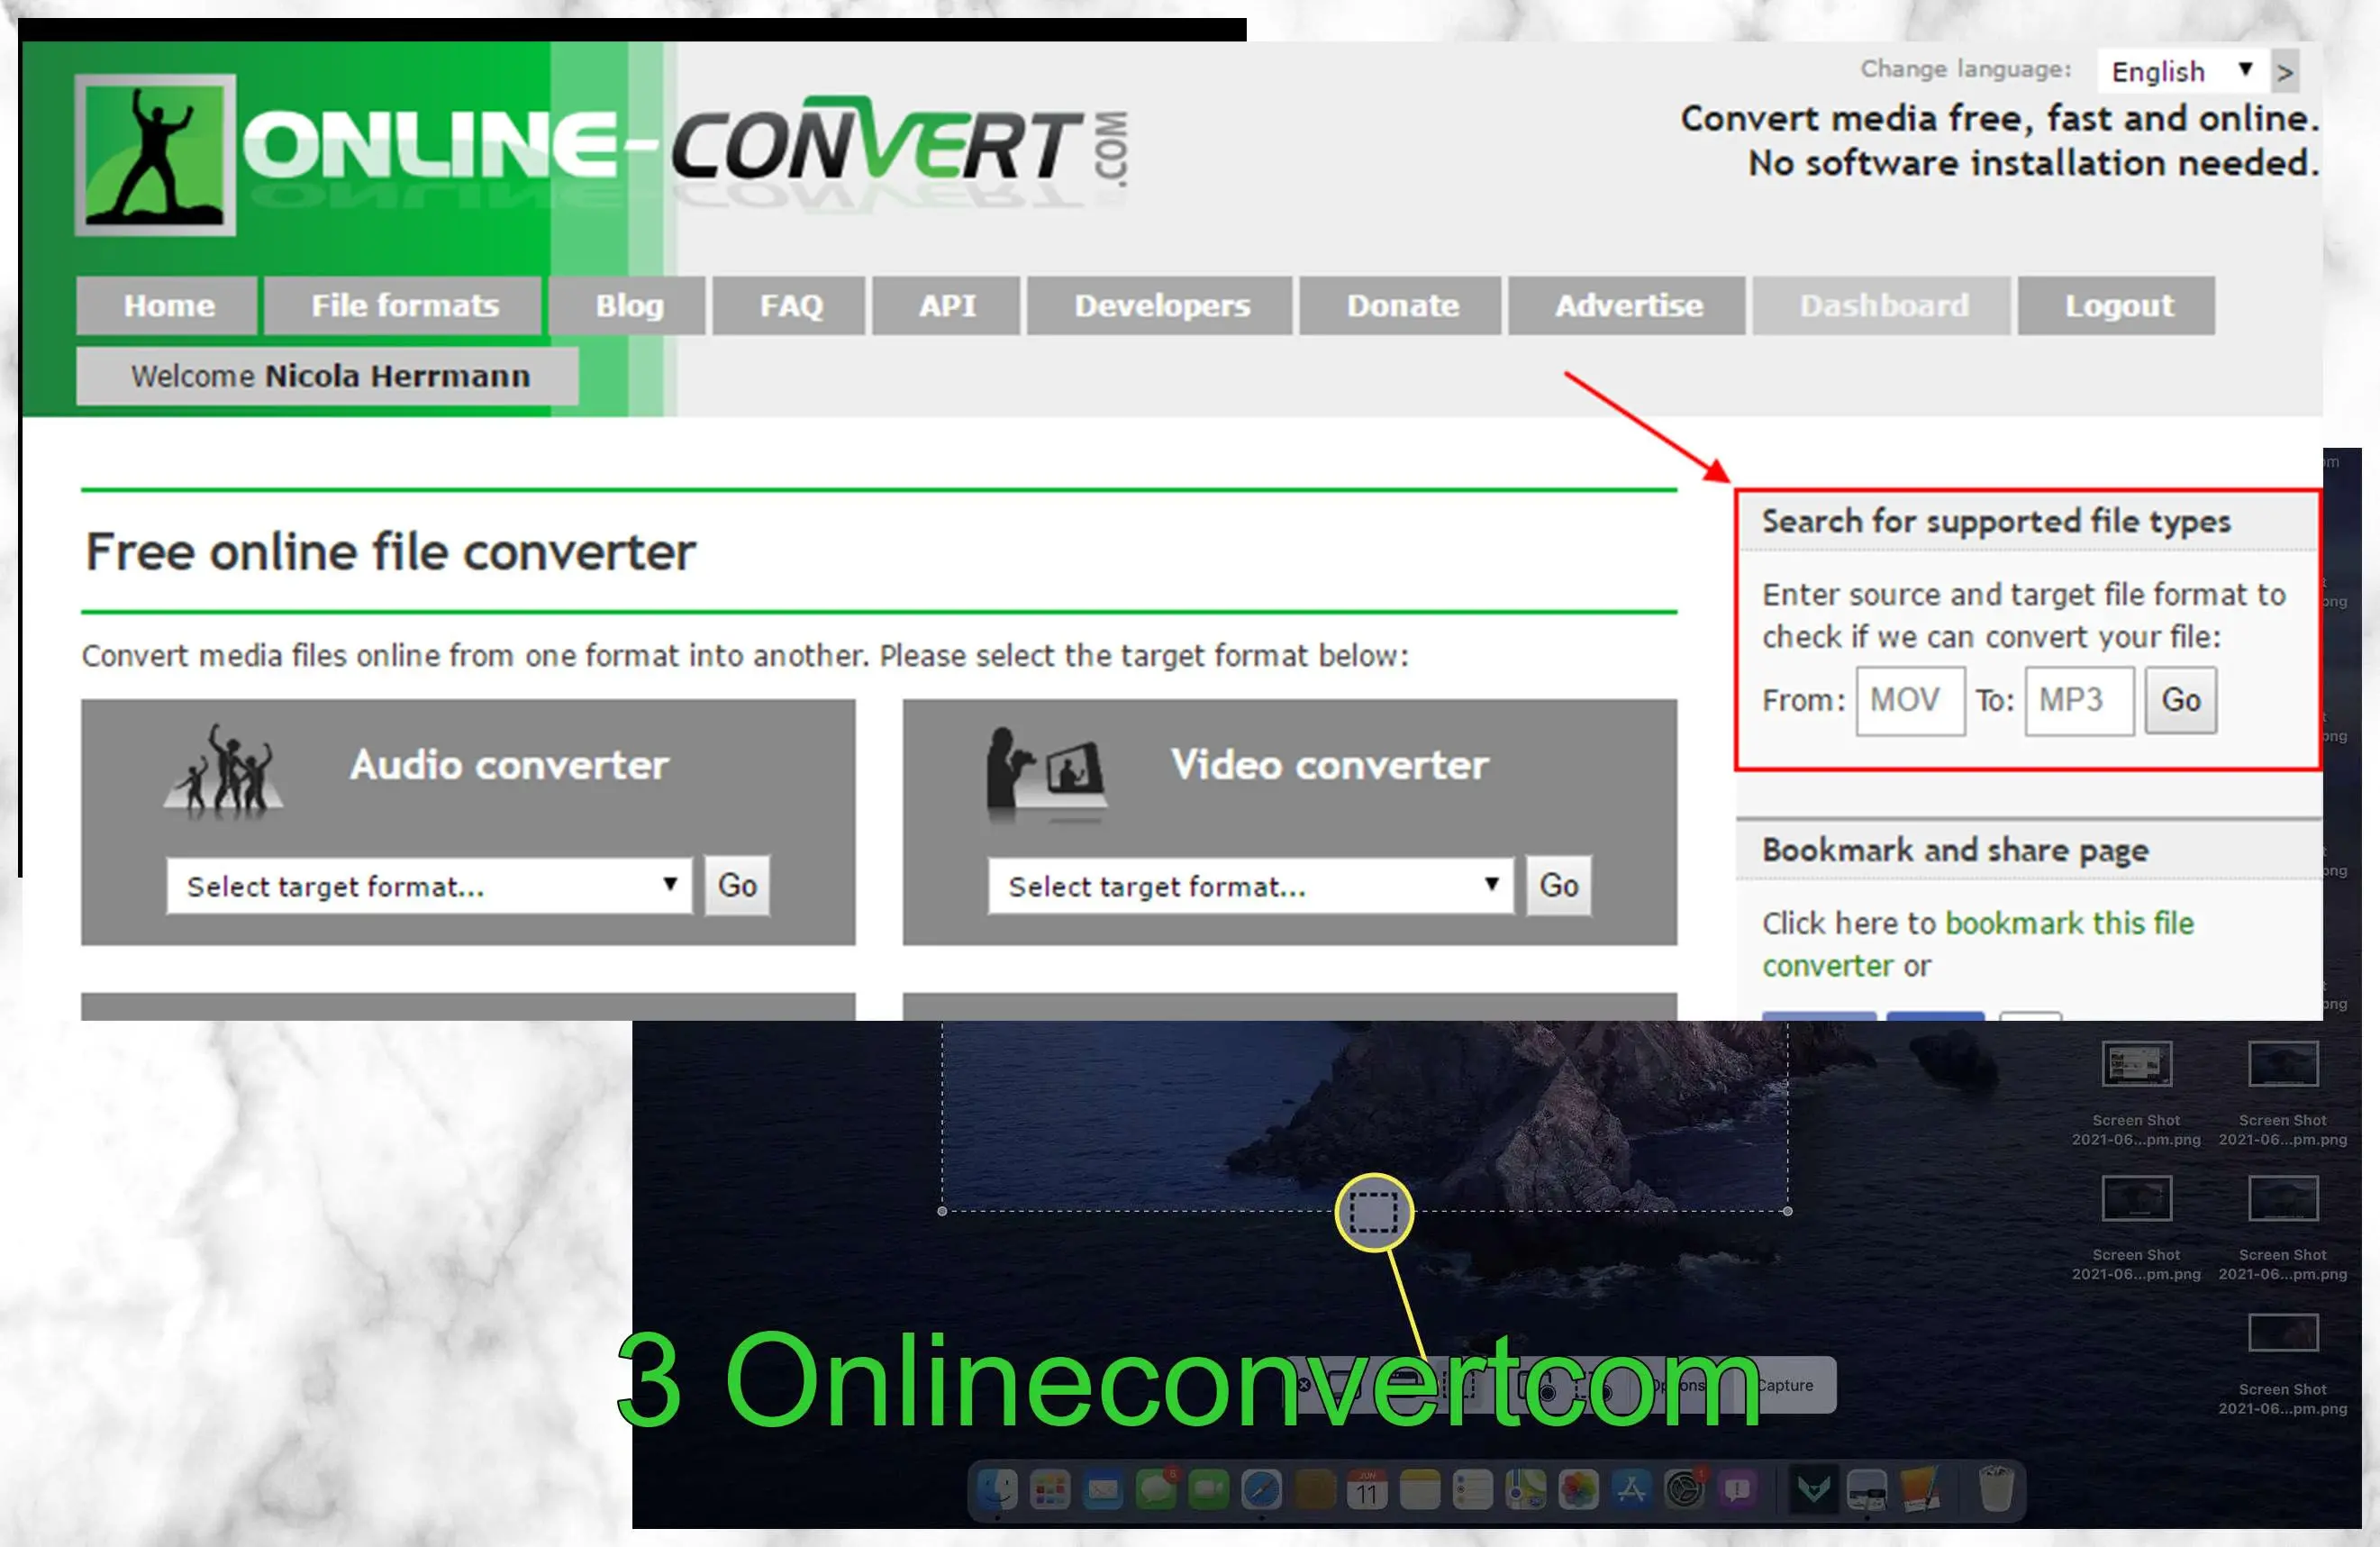 3. Online-Convert.com..